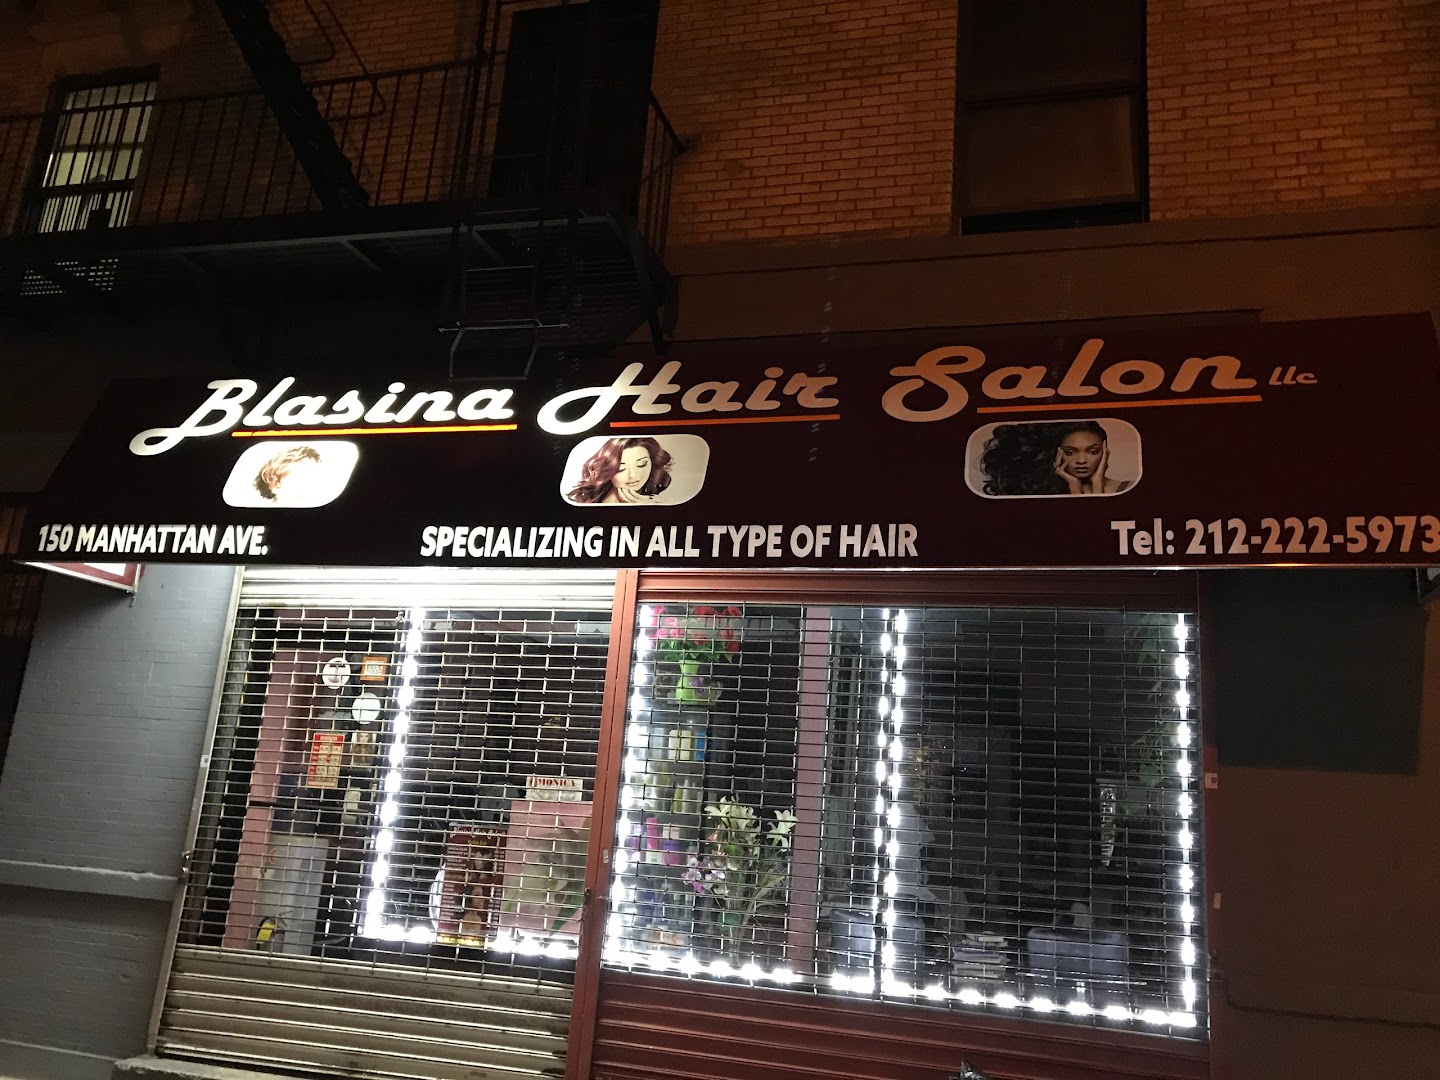 Blasina Hair Salon